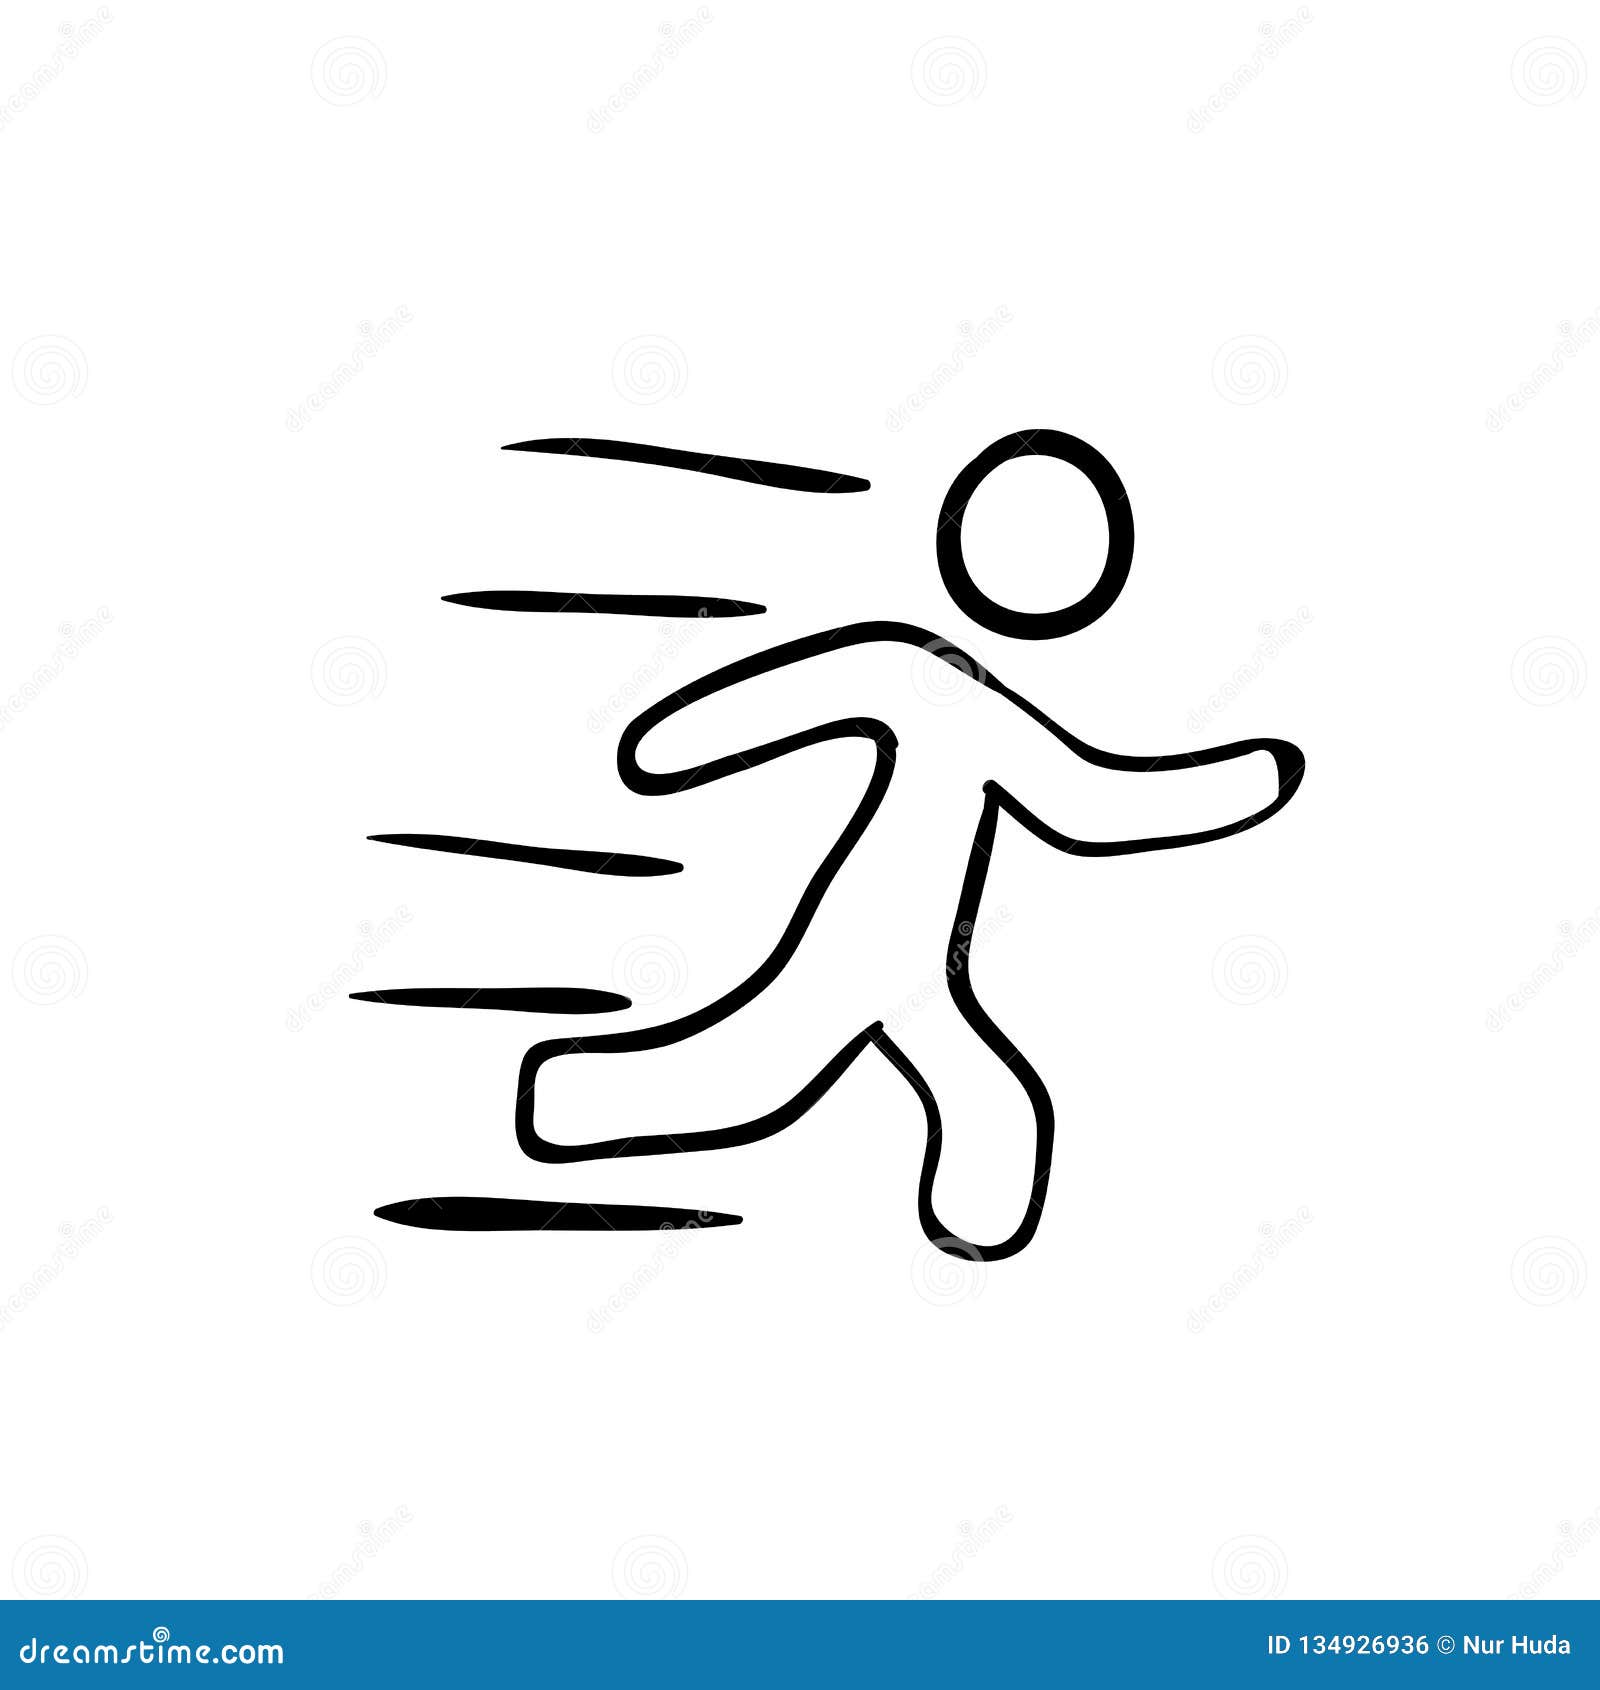 Как нарисовать бегущего человека поэтапно карандашом для начинающих